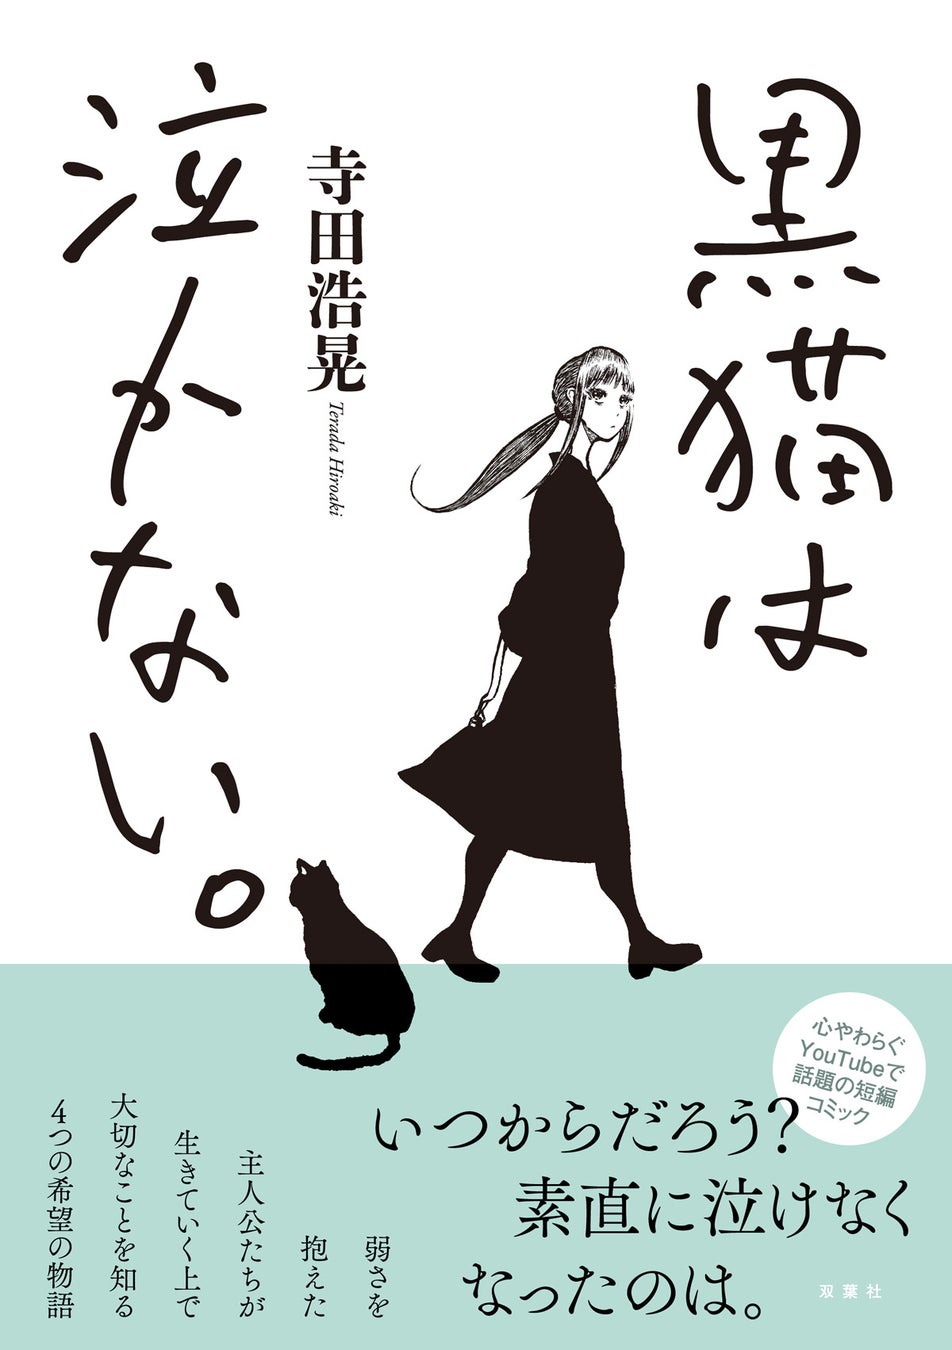 「世にも奇妙な物語」でドラマ化された物語を含む短編コミック『黒猫は泣かない。』が4月19日に発売！